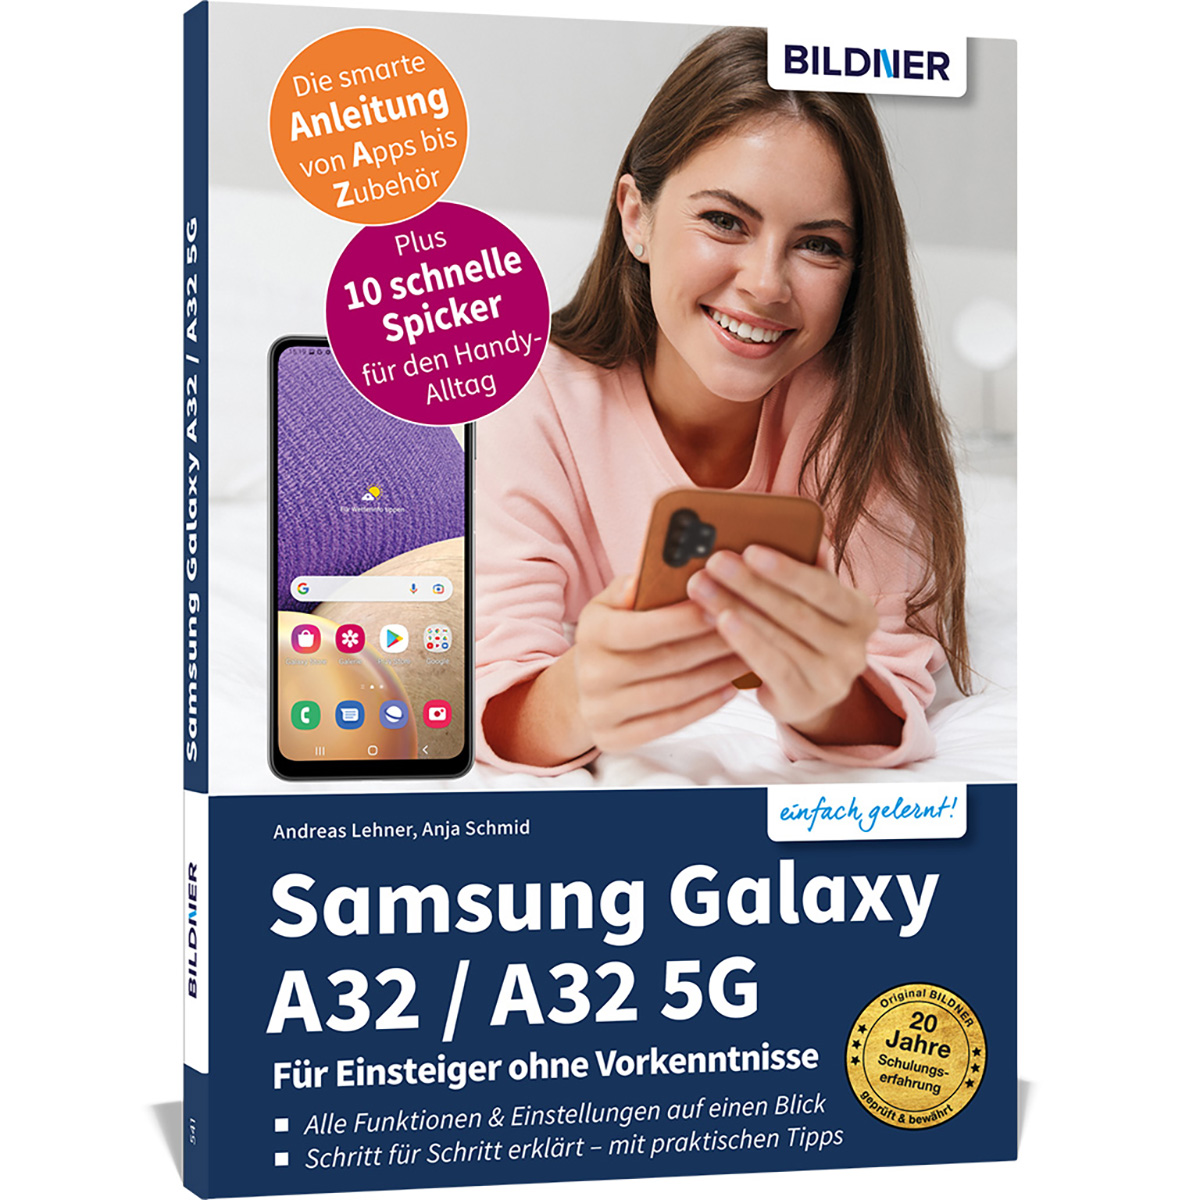 / 5G Einsteiger Samsung A32 Galaxy Vorkenntnisse A32 ohne Für -